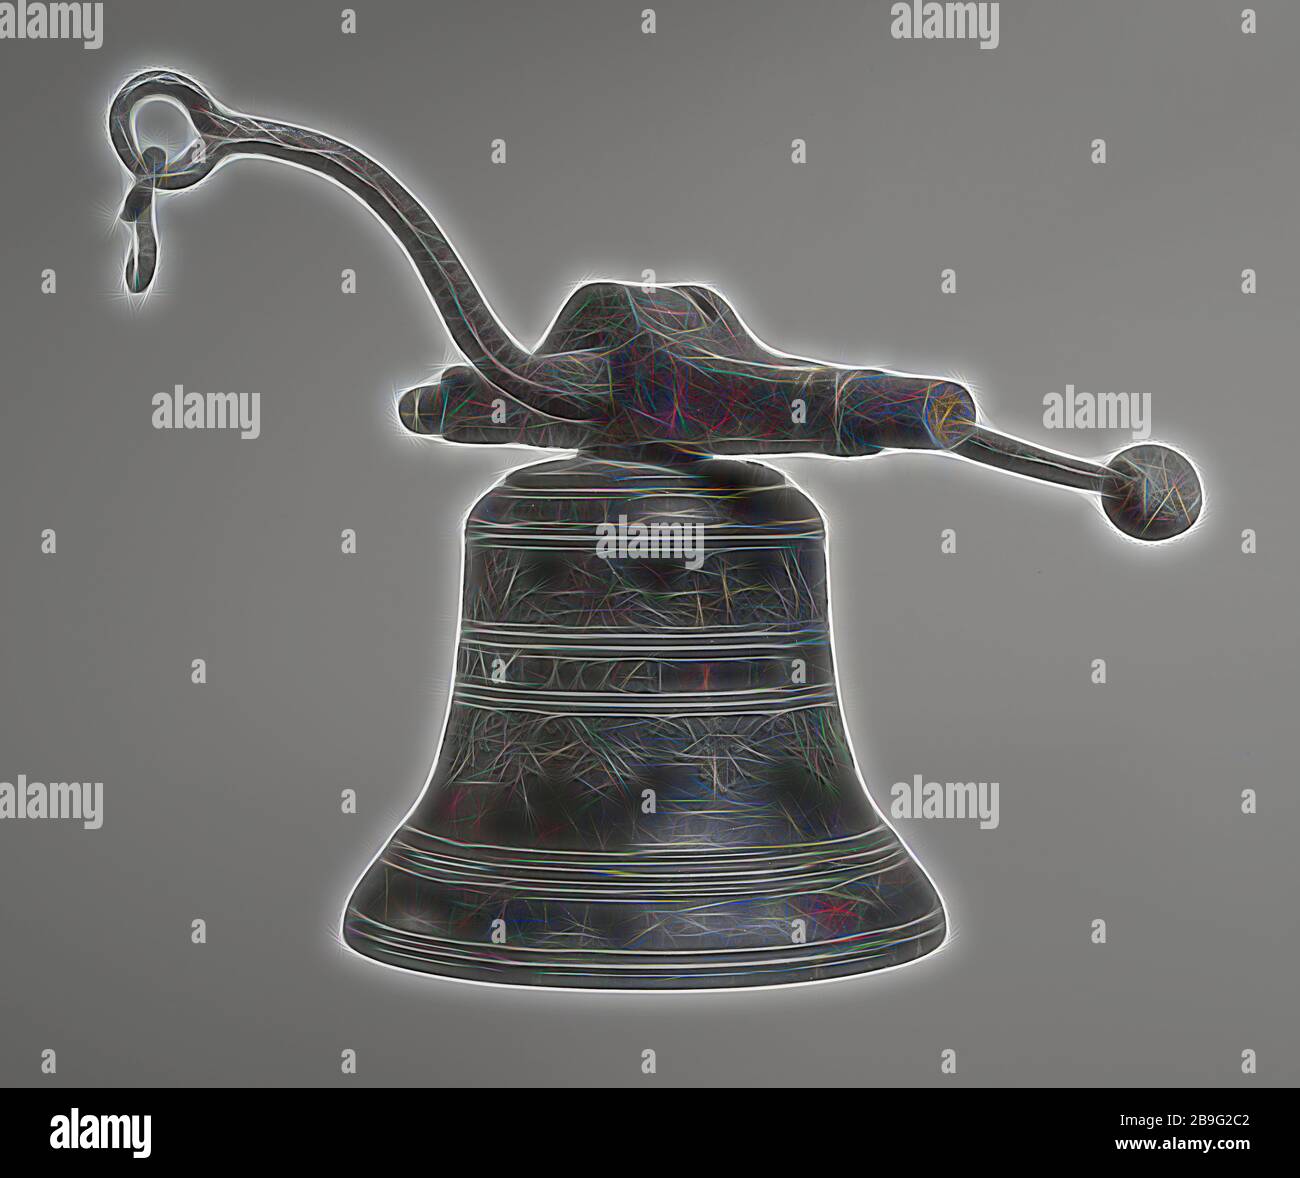 Pieter Bakker II, campana de bronce con palanca y barra de volumen, reloj  de campana sonido medio bronce hierro plomo metal, h sin barra fuerte 26.0  flanco fundido con tres frisos de